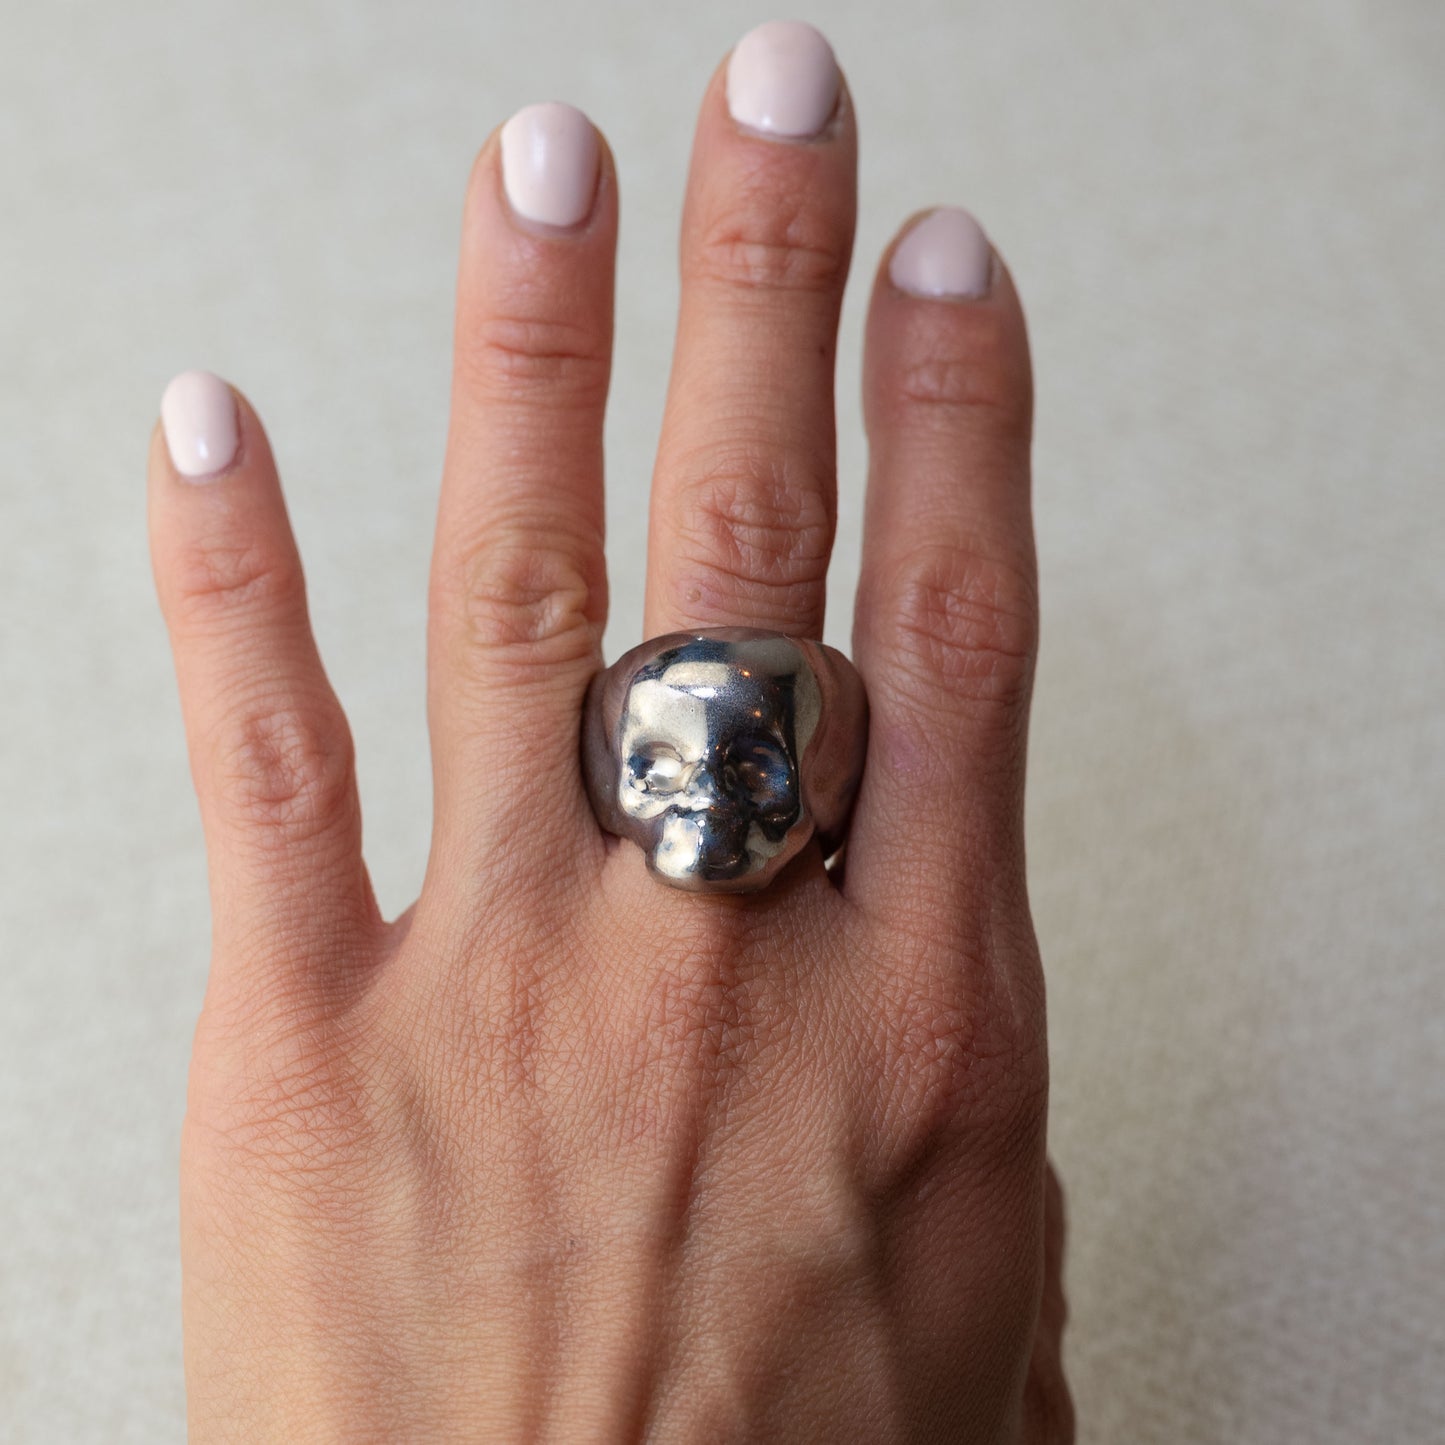 Gilded Porcelain Skull Ring - White Gold